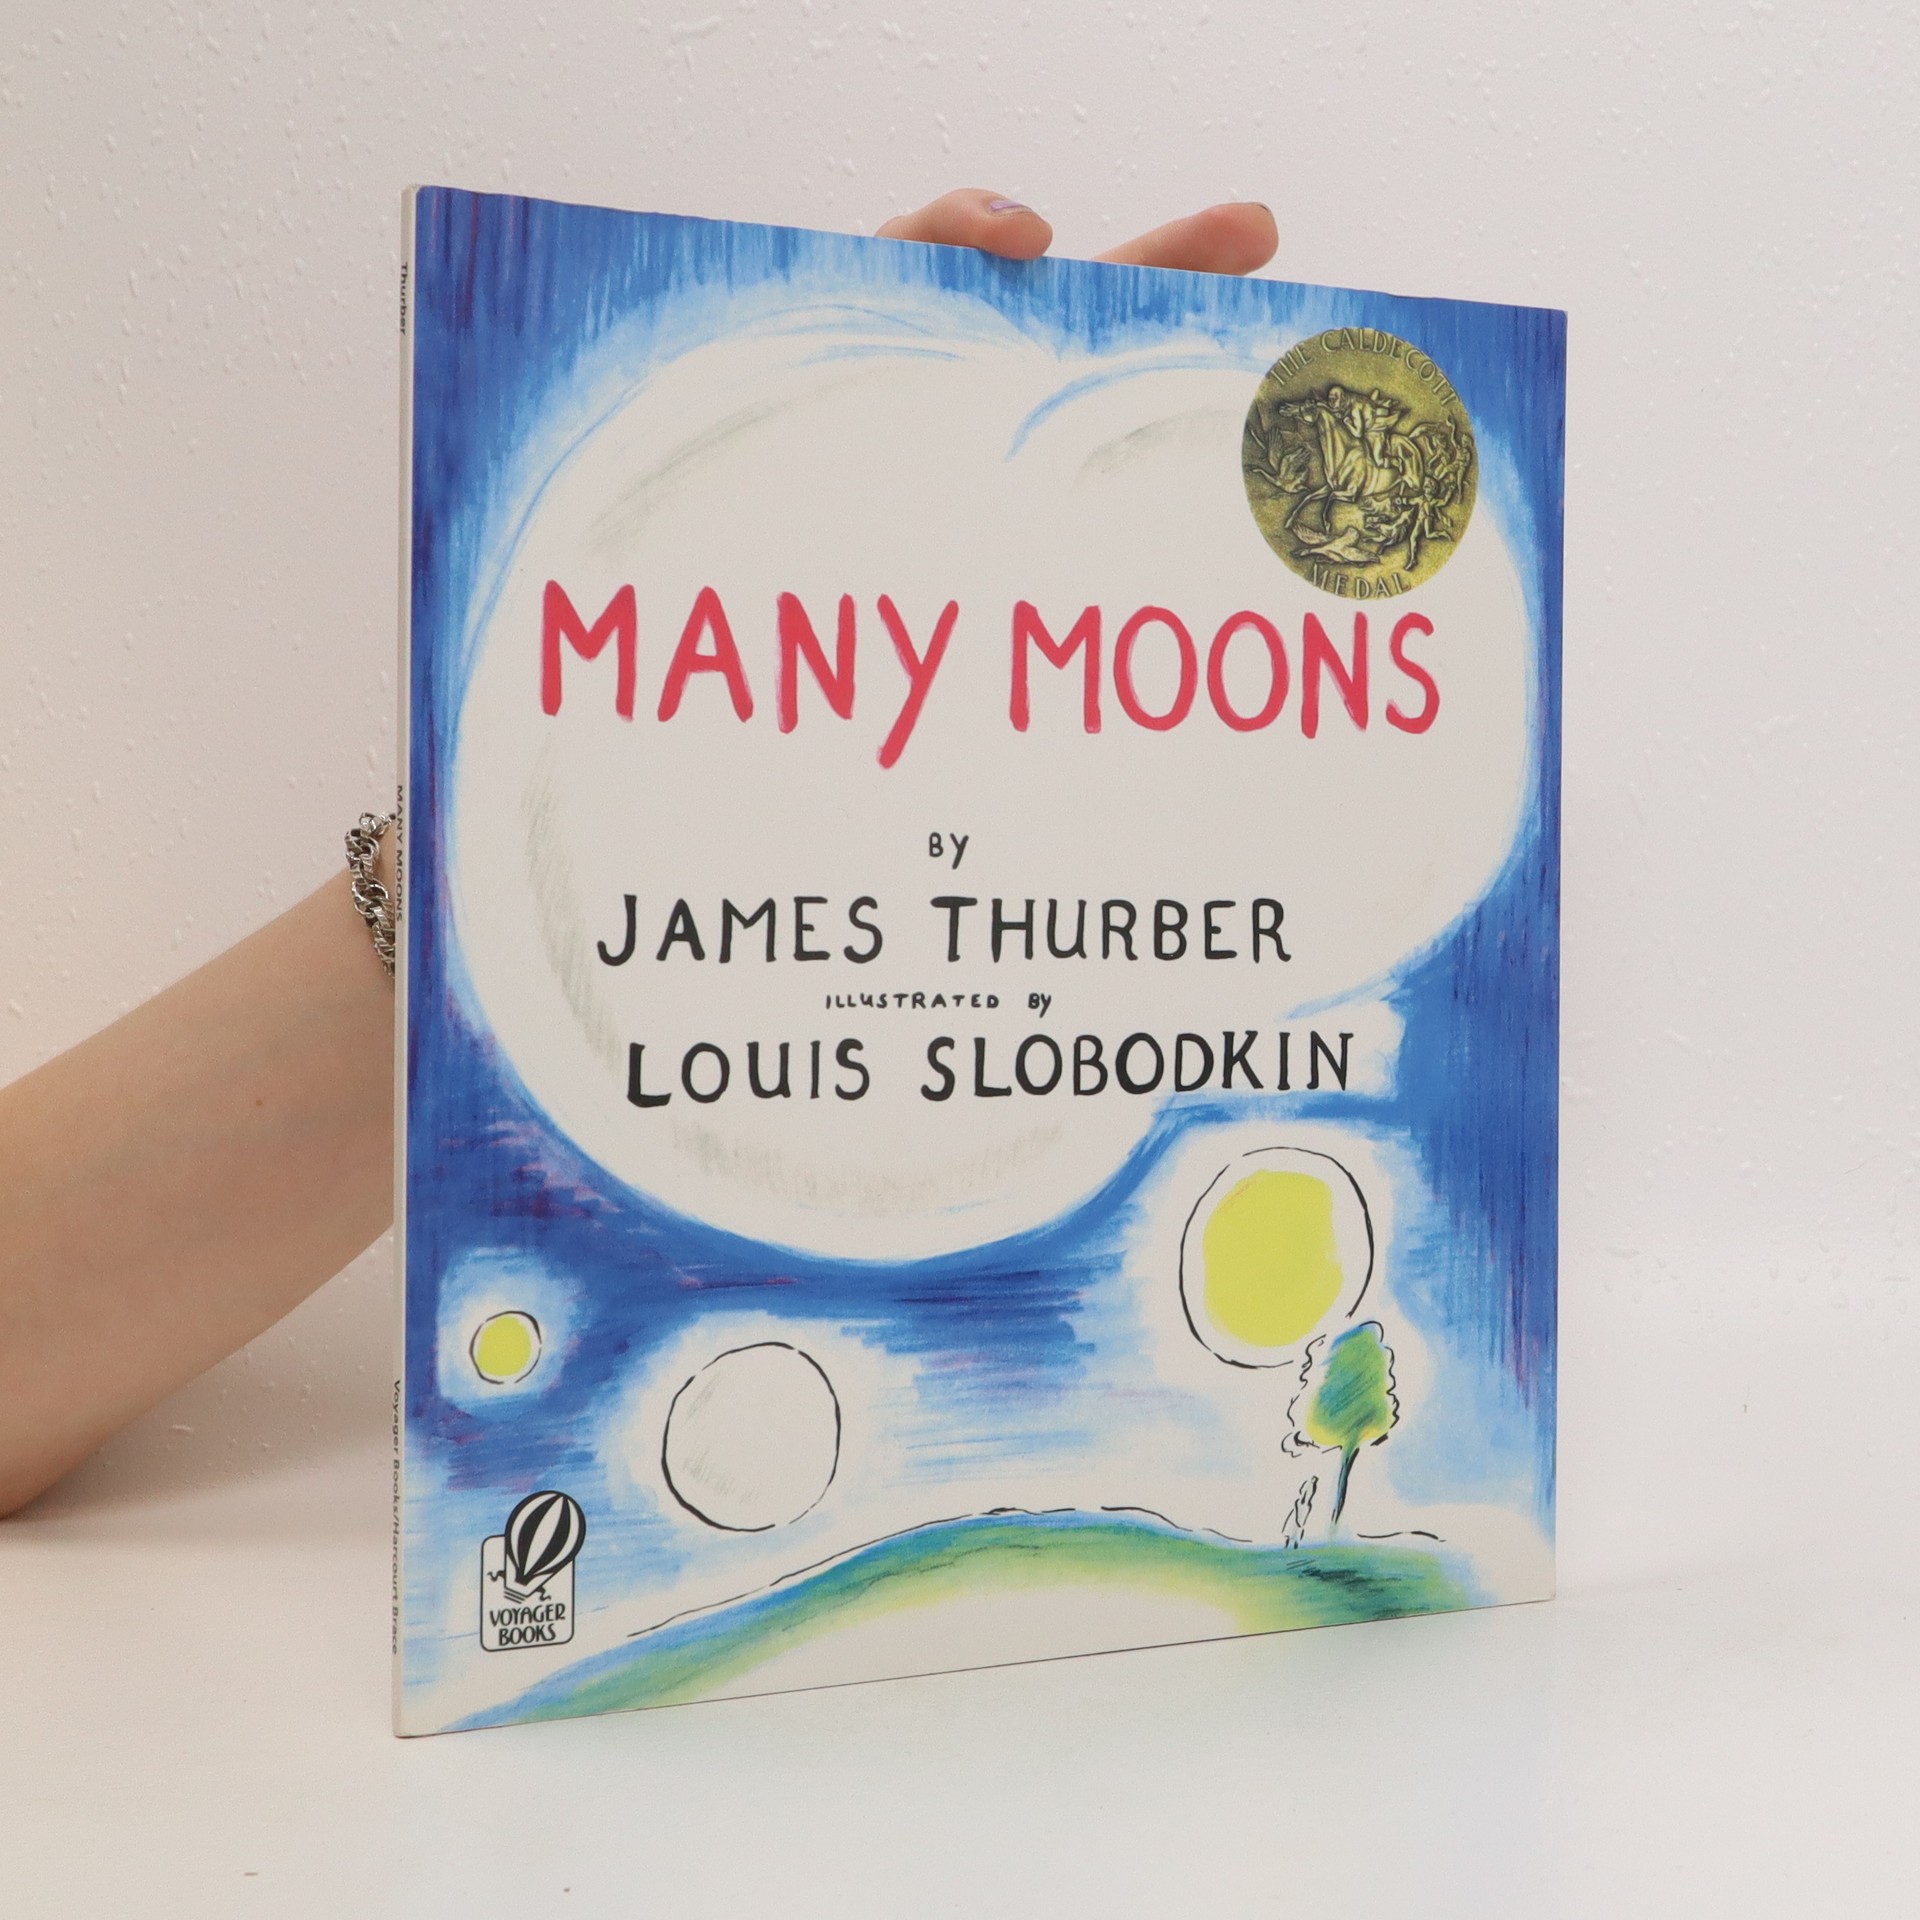 many moons by james thurber summary